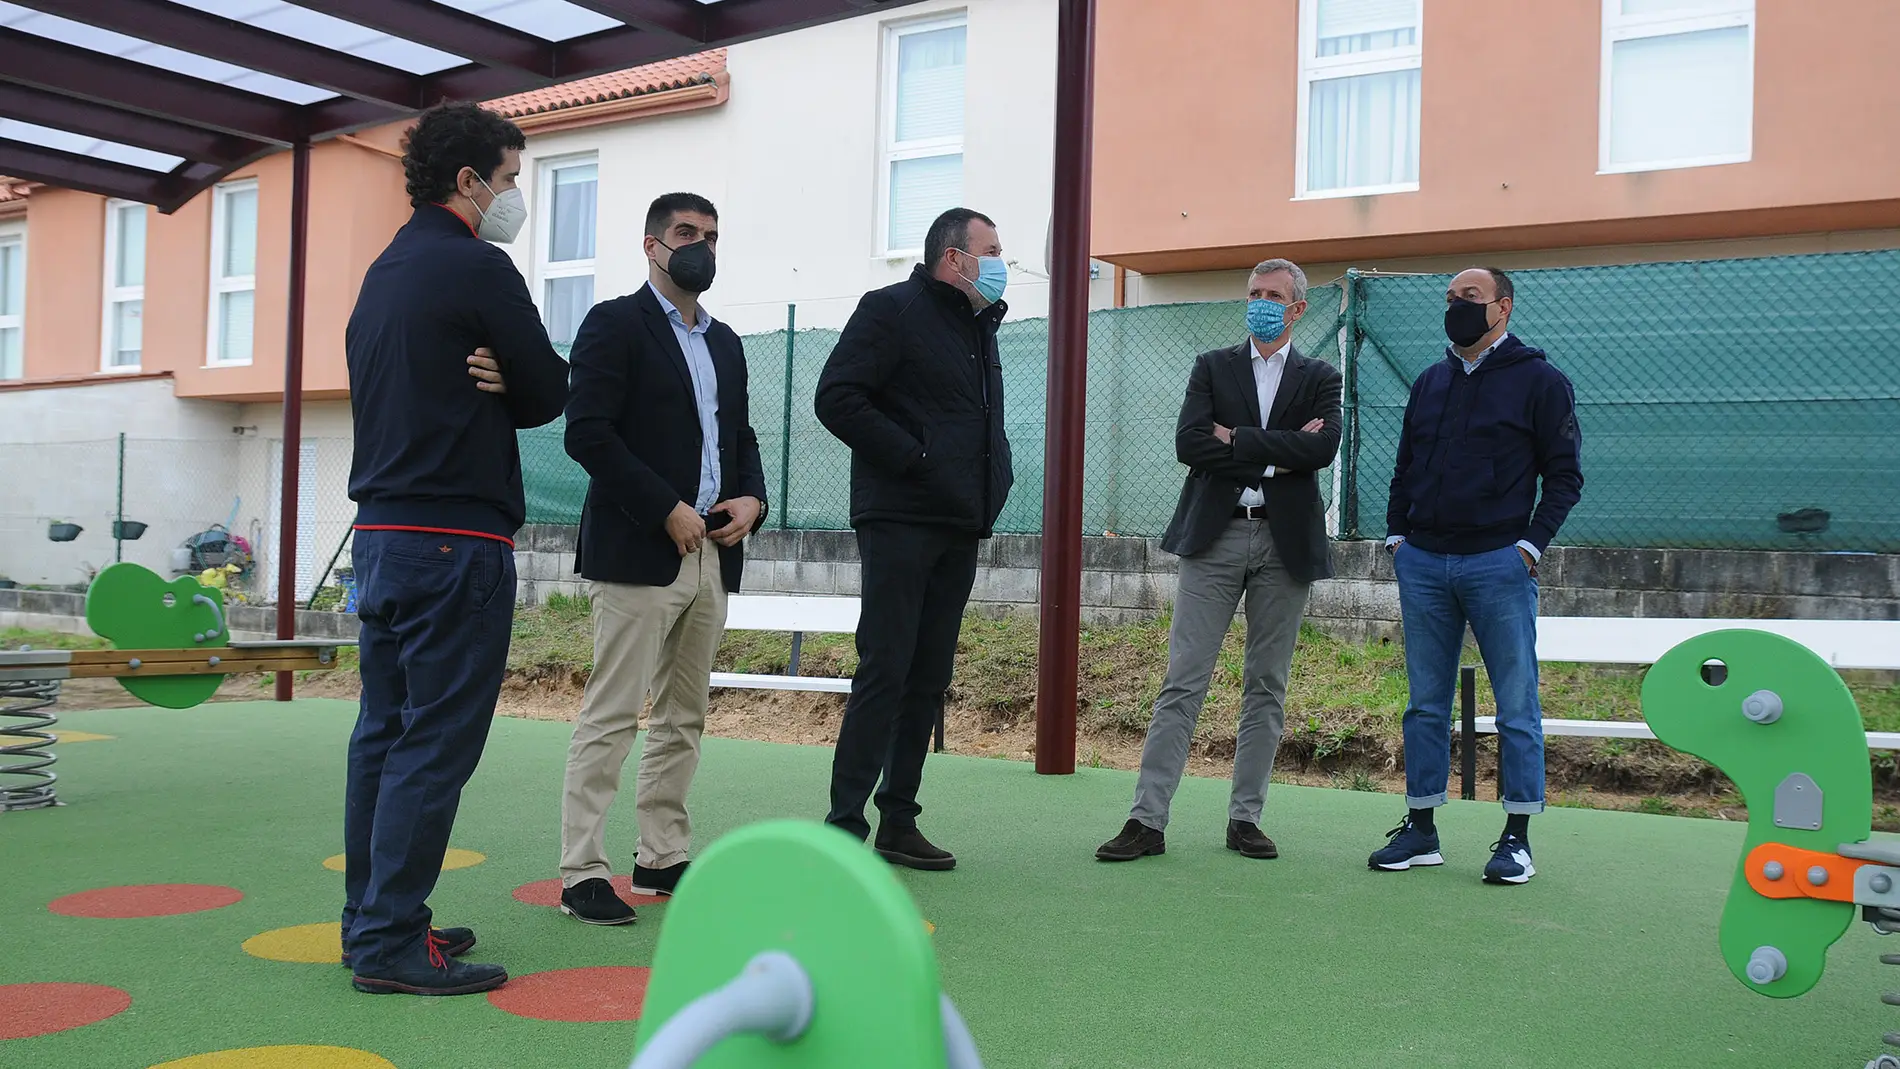 A Xunta colabora na creación dun parque infantil no Concello de Nogueira de Ramuín